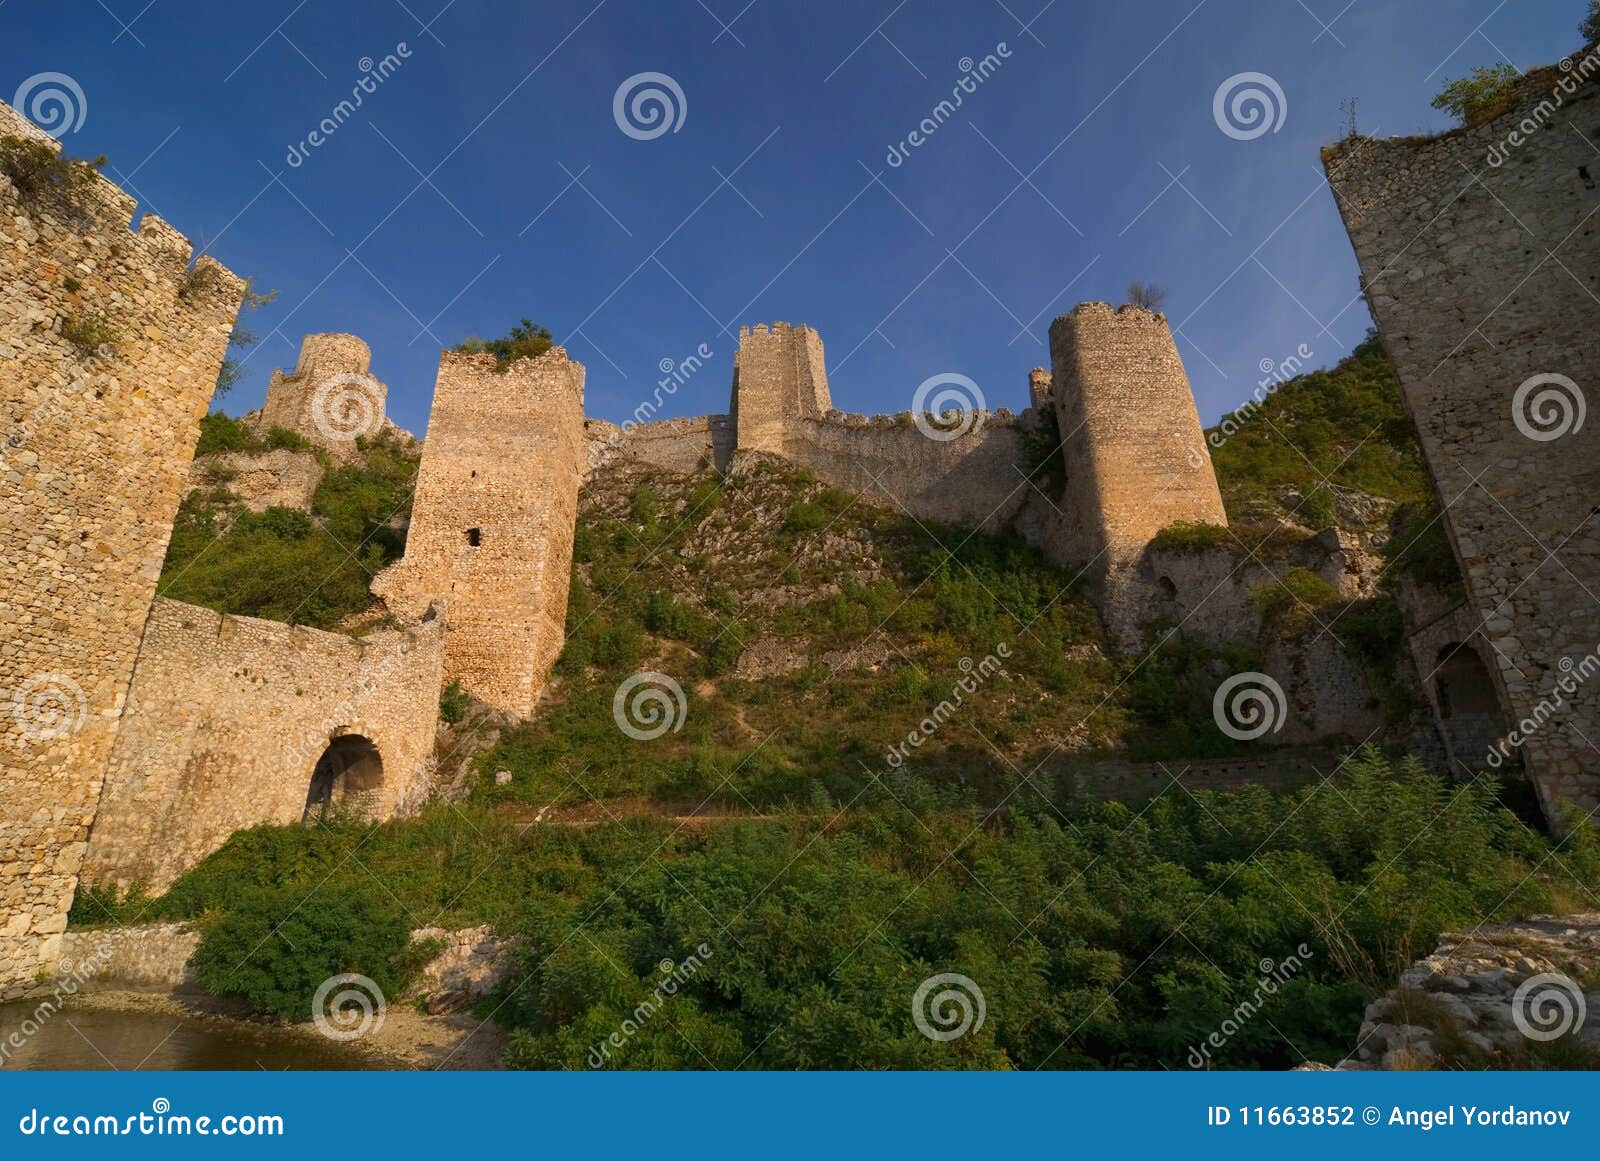 golubac castle on danube river in serbia